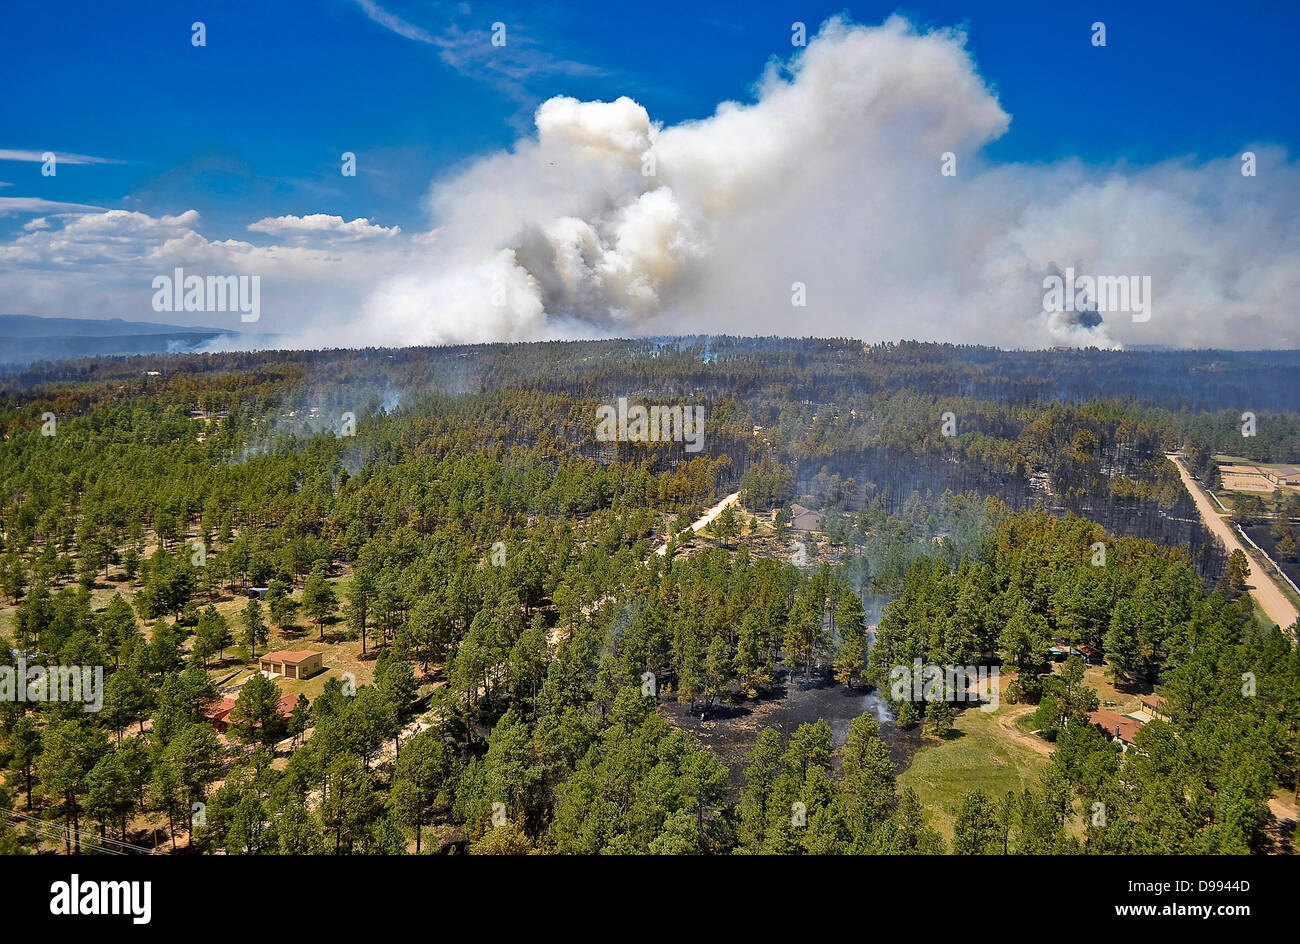 Soufflets de fumée comme le feu de forêt noire continue à brûler le 12 juin 2013 près de Colorado Spring Co., l'incendie a tué deux personnes et détruit plus de 500 maisons de plus en plus destructrices de l'incendie dans le Colorado. Banque D'Images